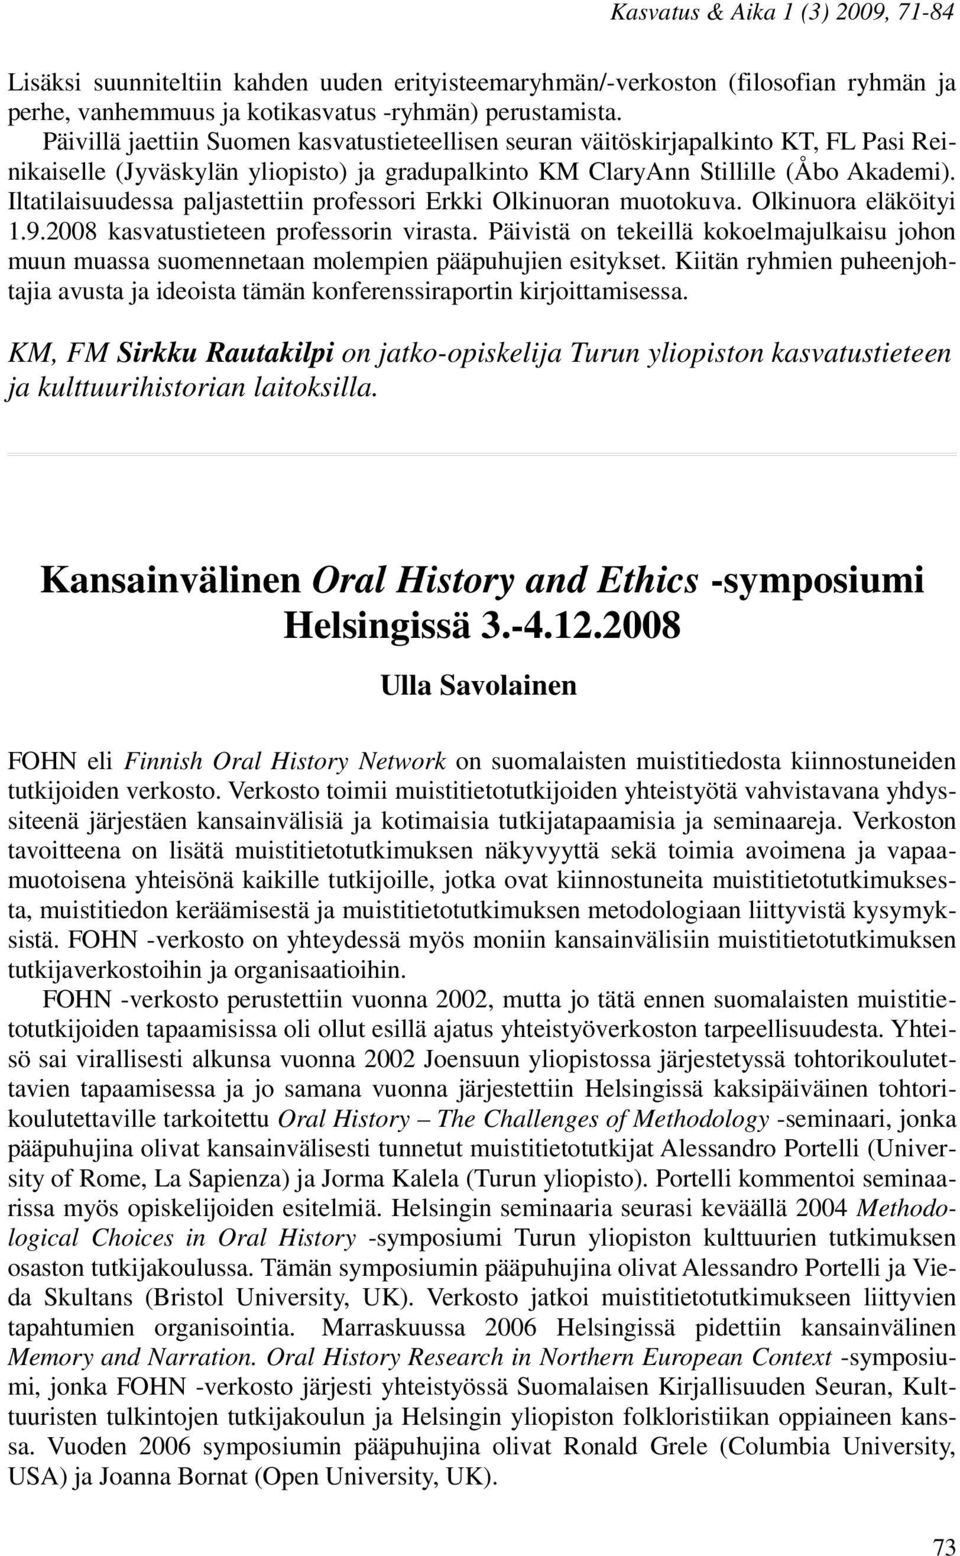 Iltatilaisuudessa paljastettiin professori Erkki Olkinuoran muotokuva. Olkinuora eläköityi 1.9.2008 kasvatustieteen professorin virasta.